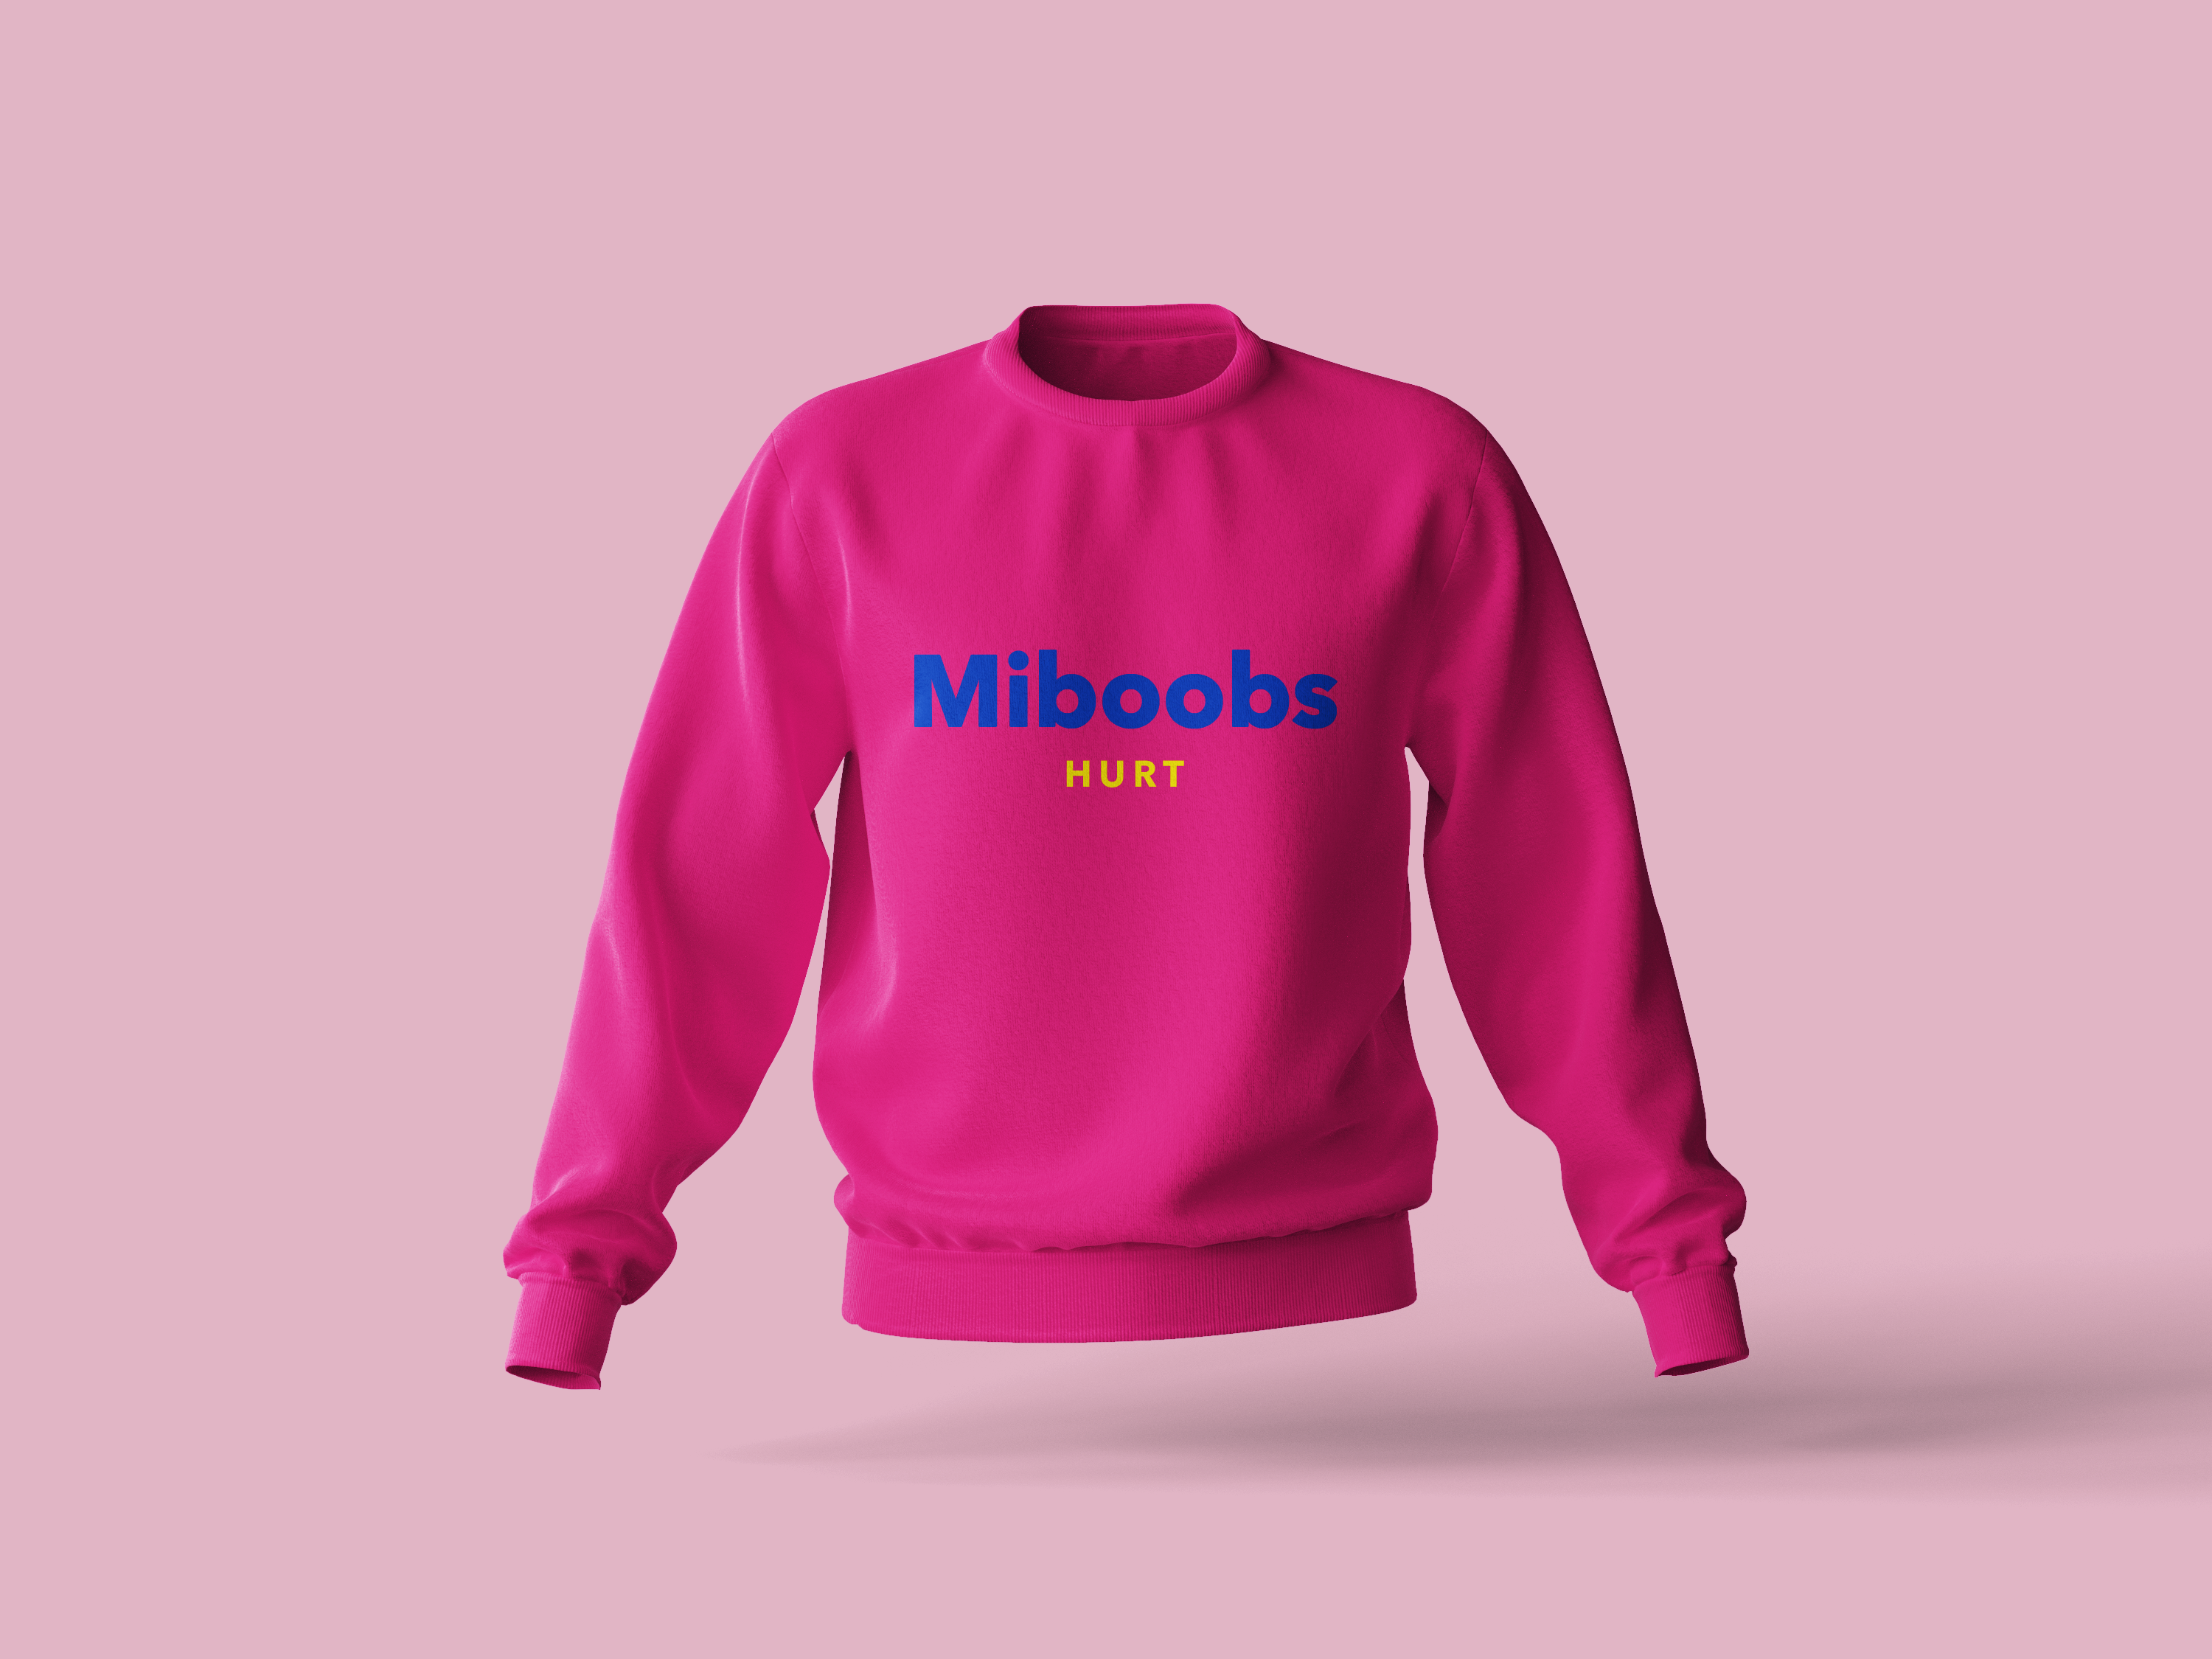 Miboobs Hurt sweatshirt